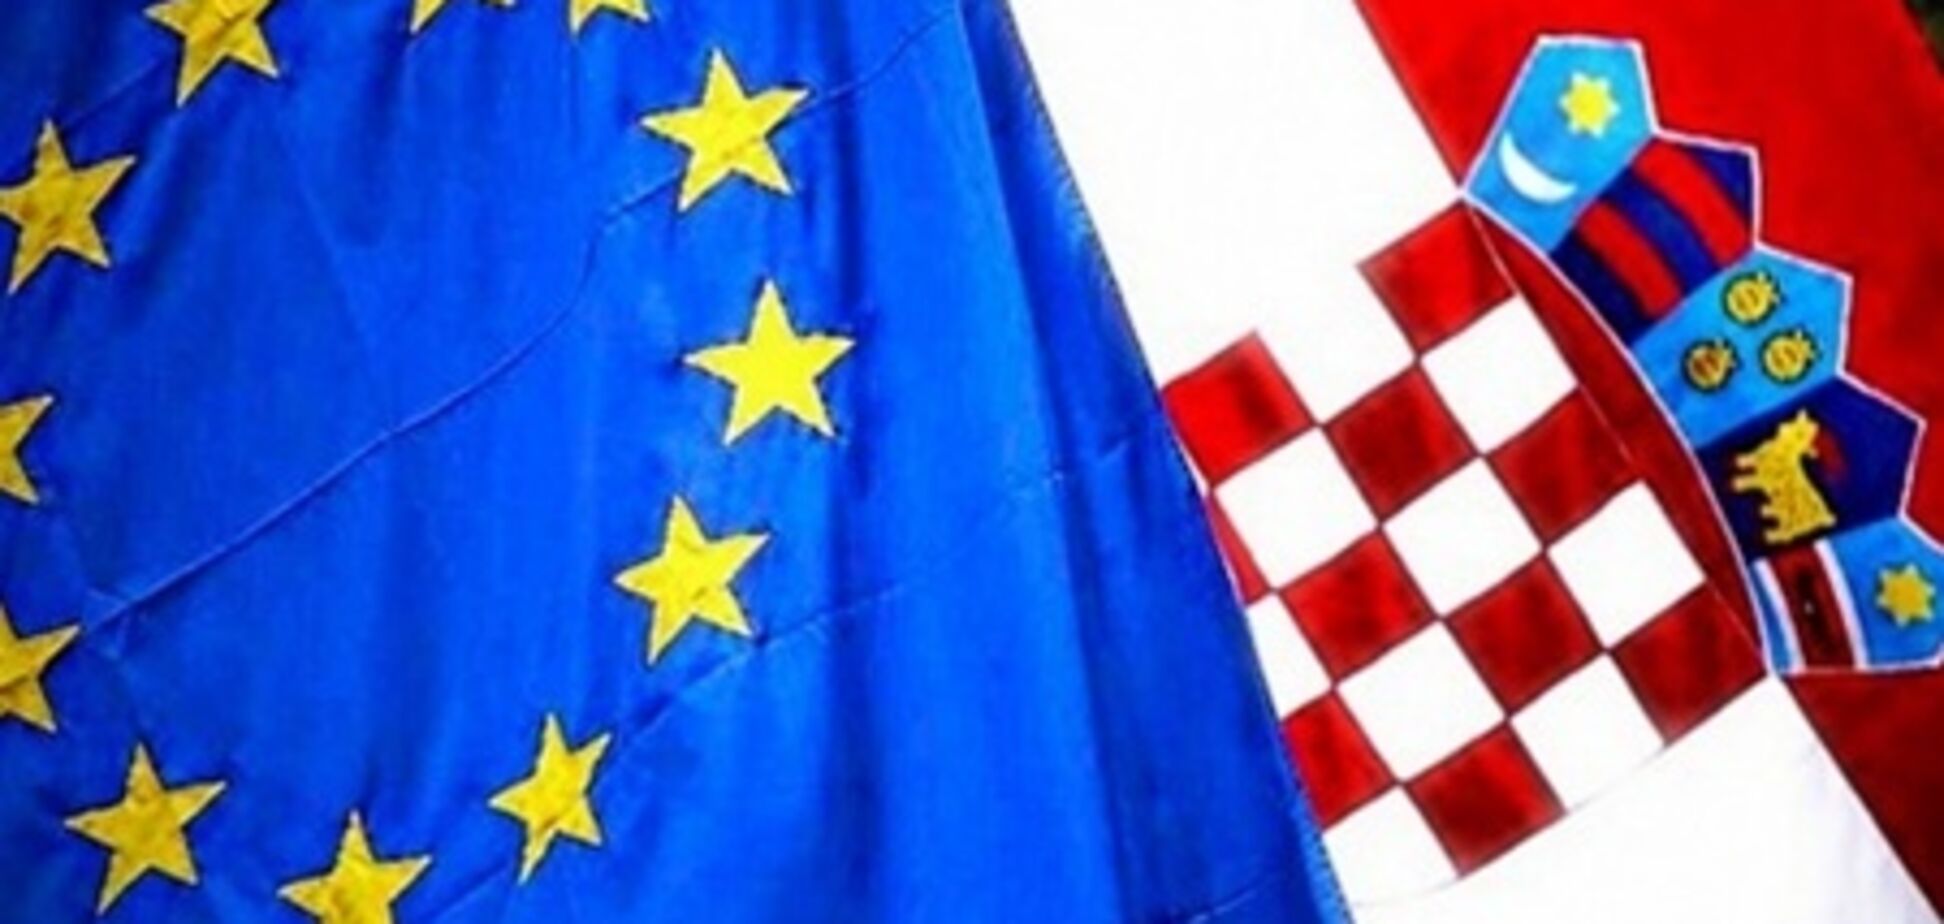 Противники вступления Хорватии в ЕС вышли на улицы с черными флагами